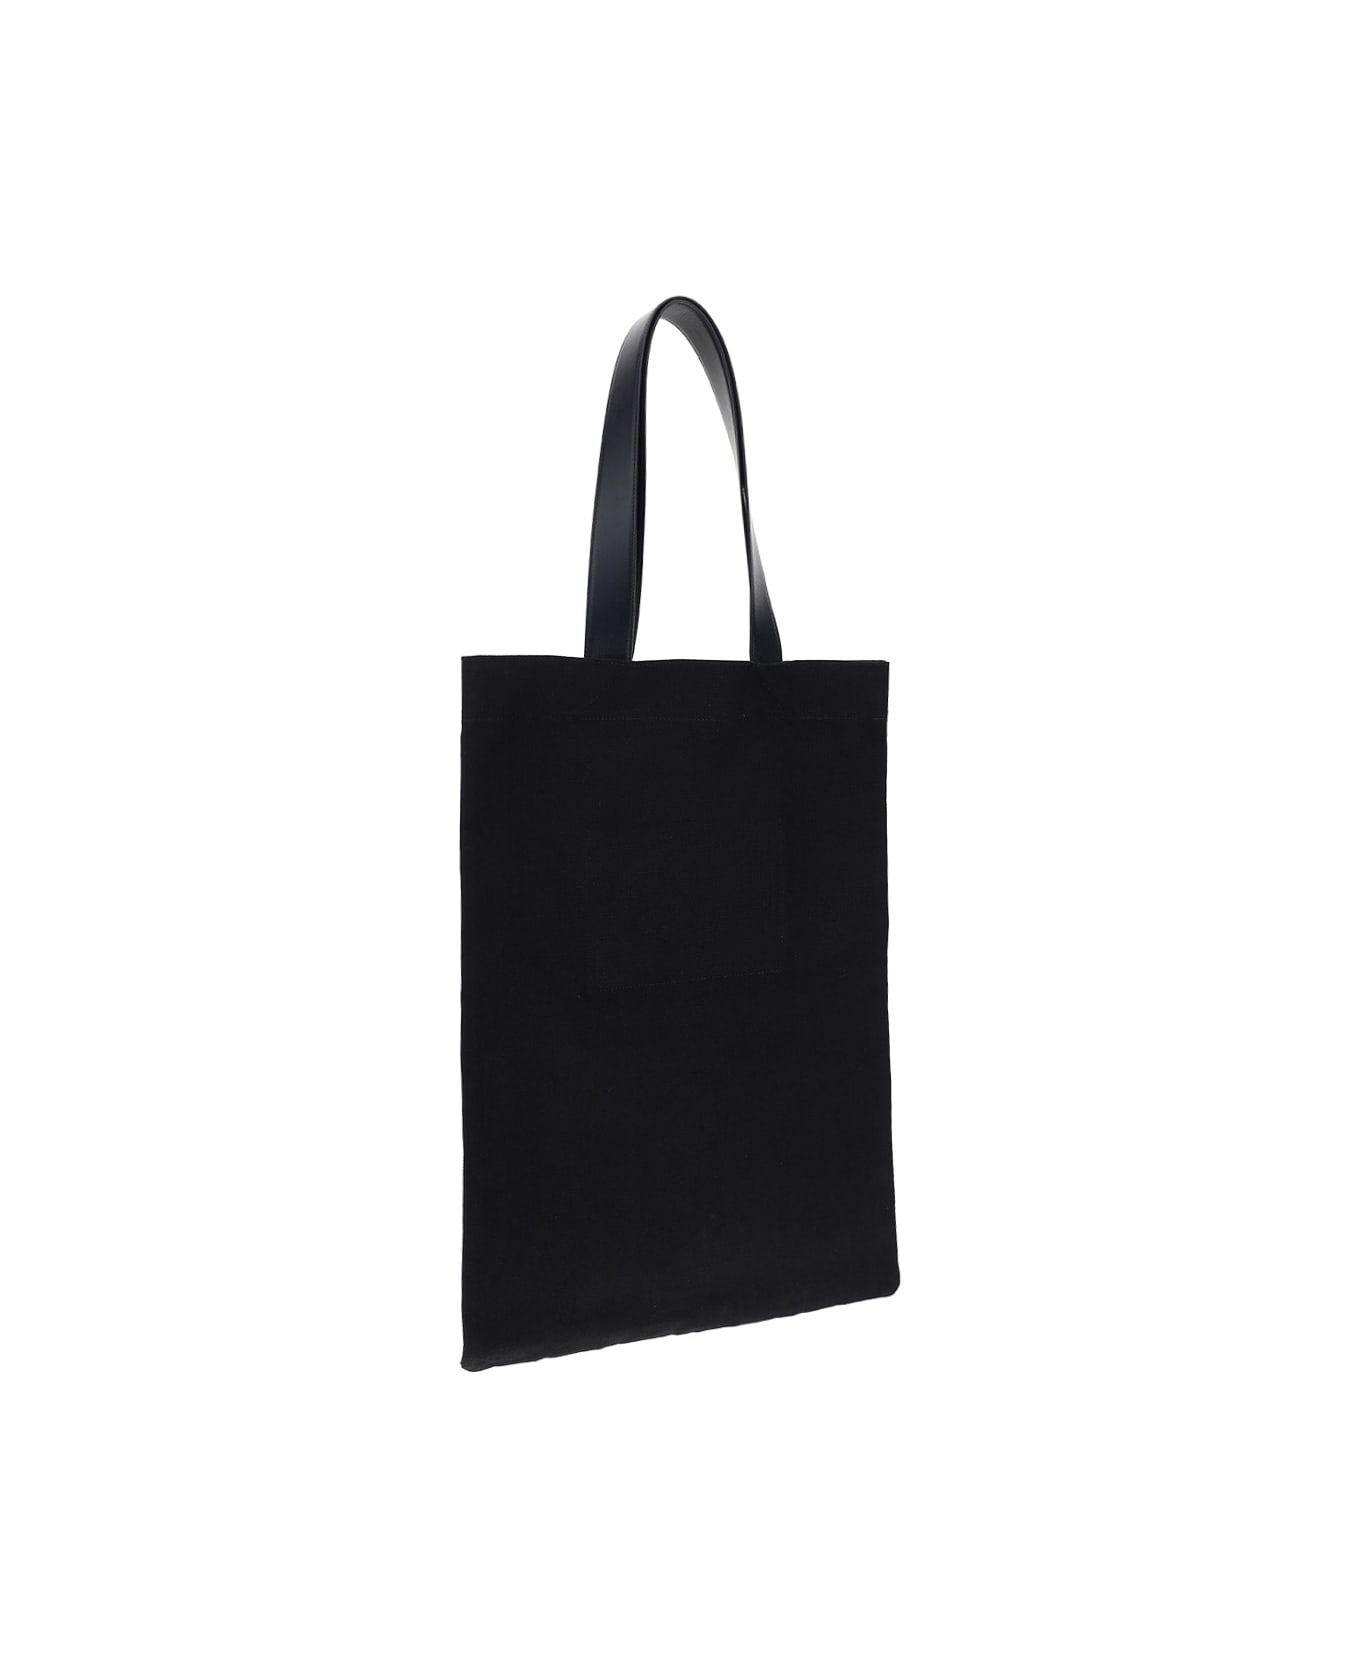 Jil Sander Shopping Bag - 001